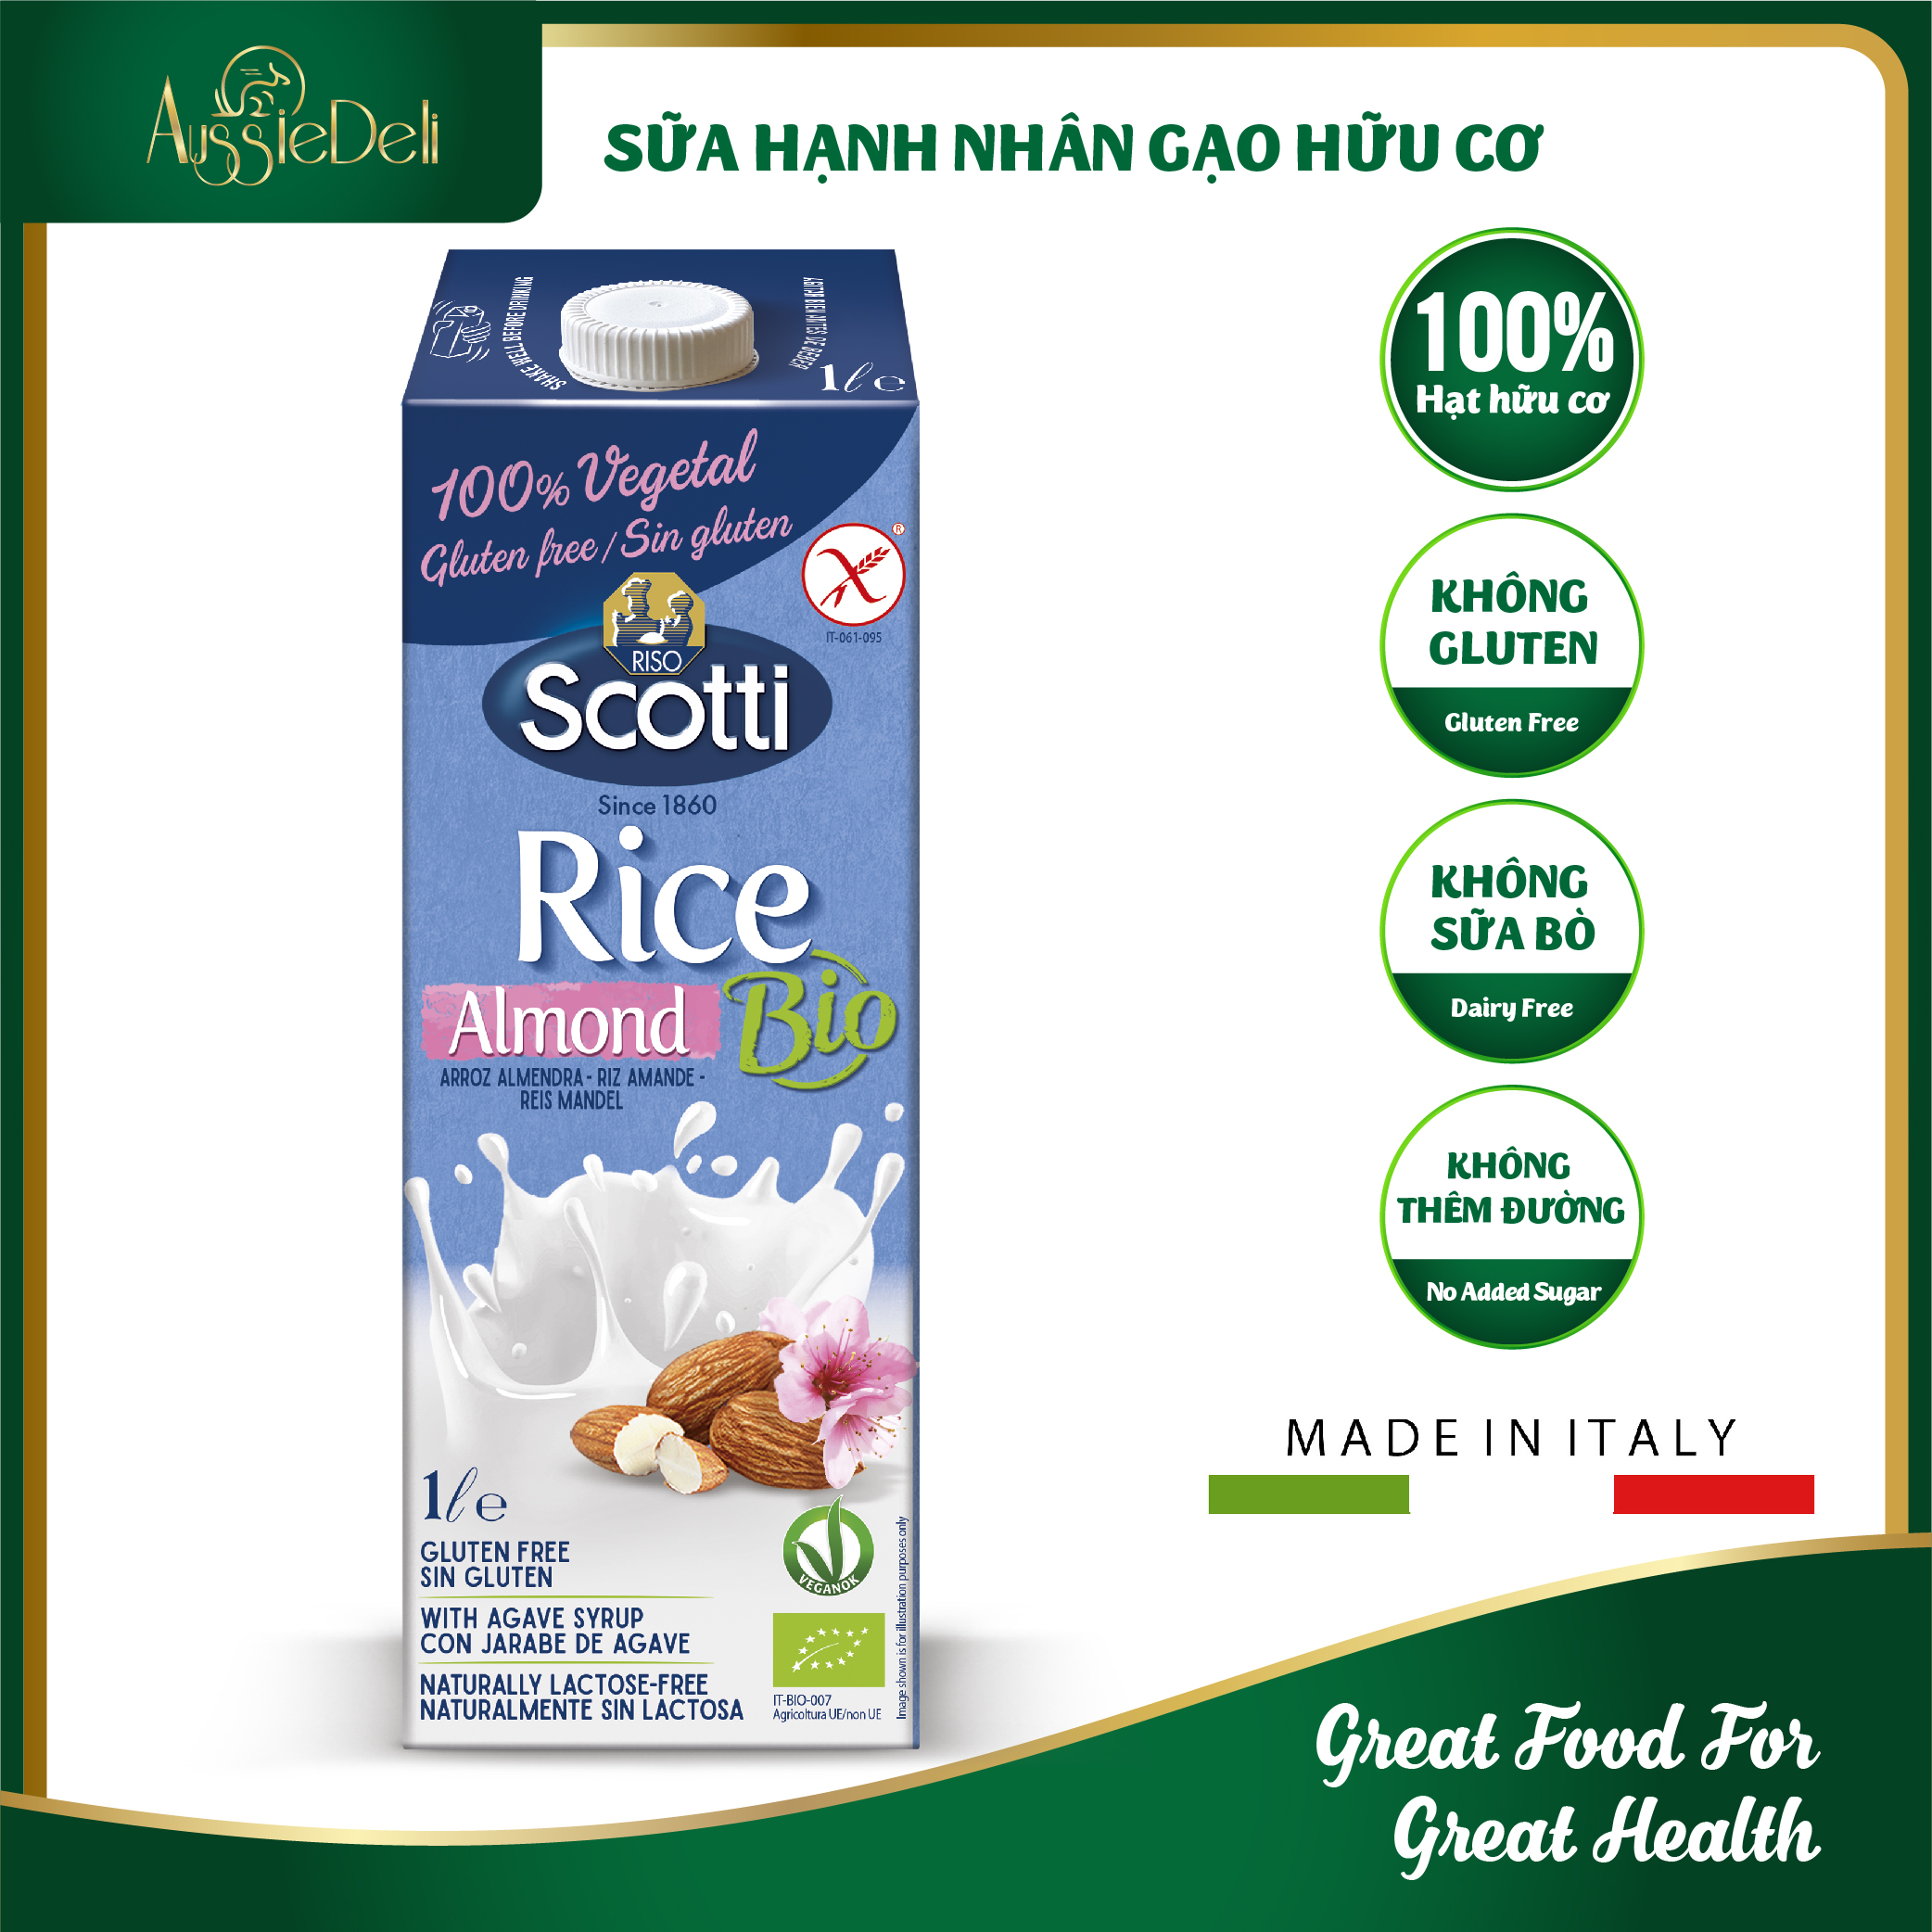 Sữa Hạnh Nhân Gạo Hữu Cơ -Rice Almond- hộp 1l, chất lượng đảm bảo an toàn đến sức khỏe người sử dụng, cam kết hàng đúng mô tả